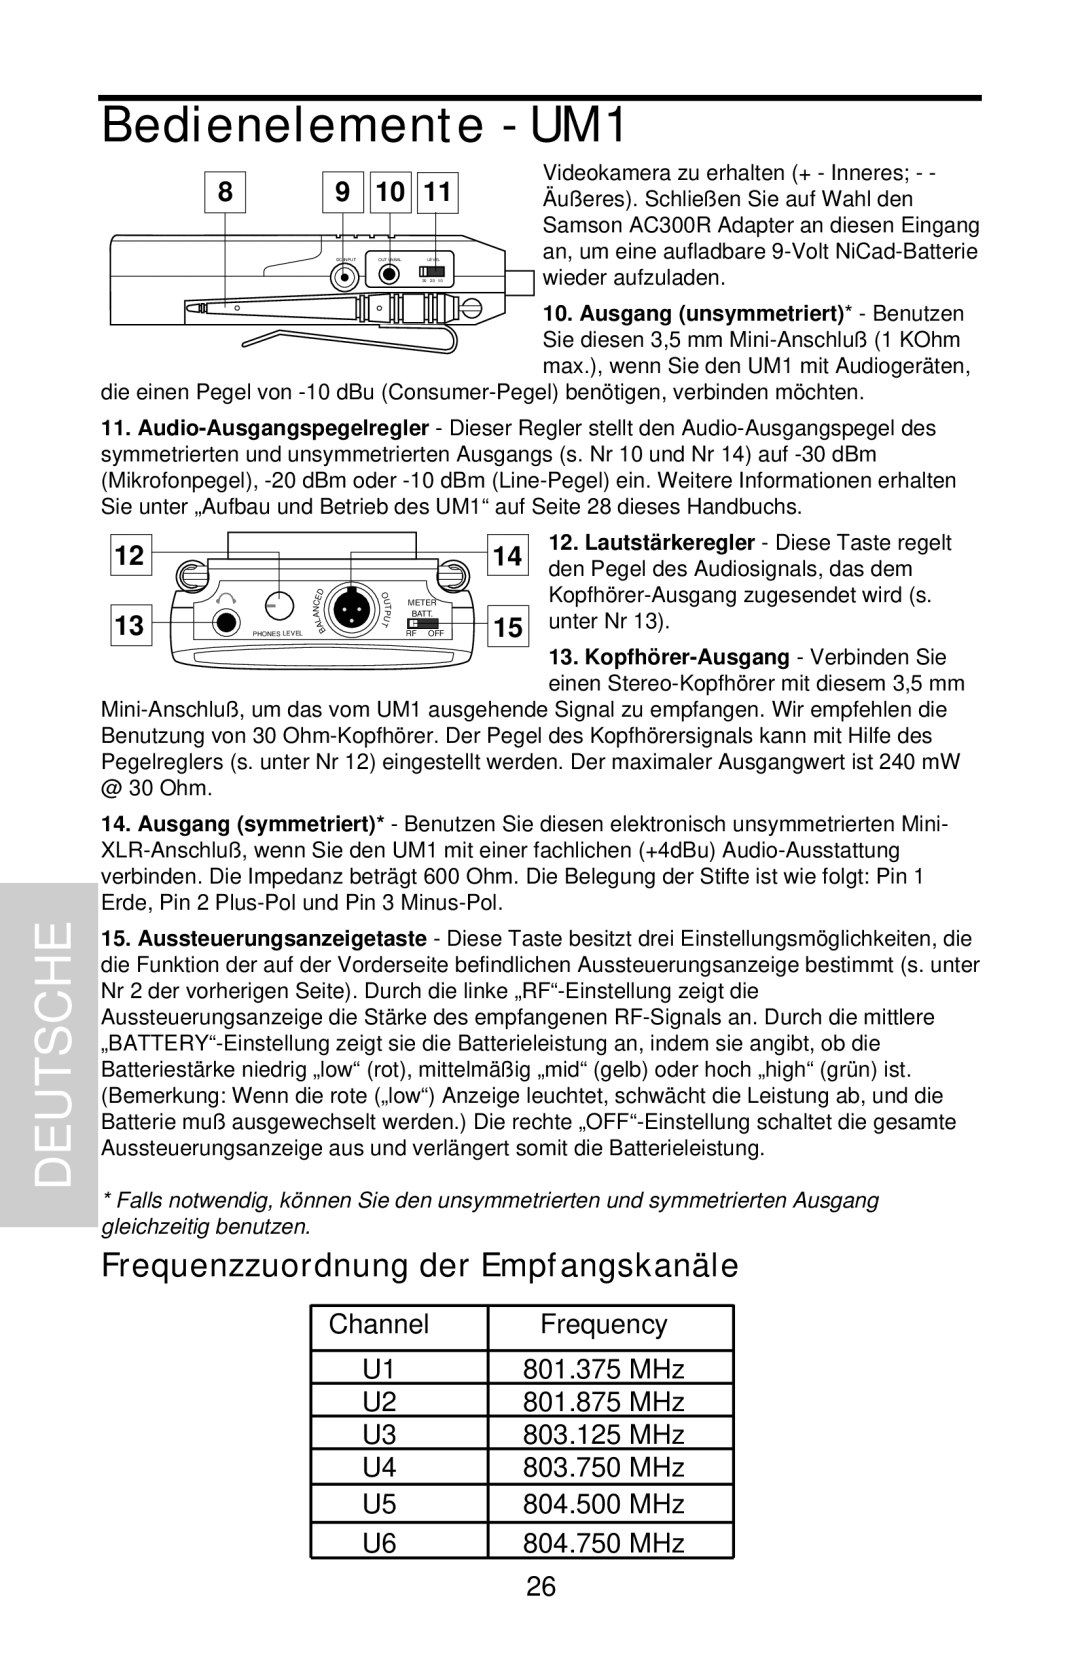 Samson UHF Series One owner manual Frequenzzuordnung der Empfangskanäle, Deutsche, Bedienelemente - UM1 